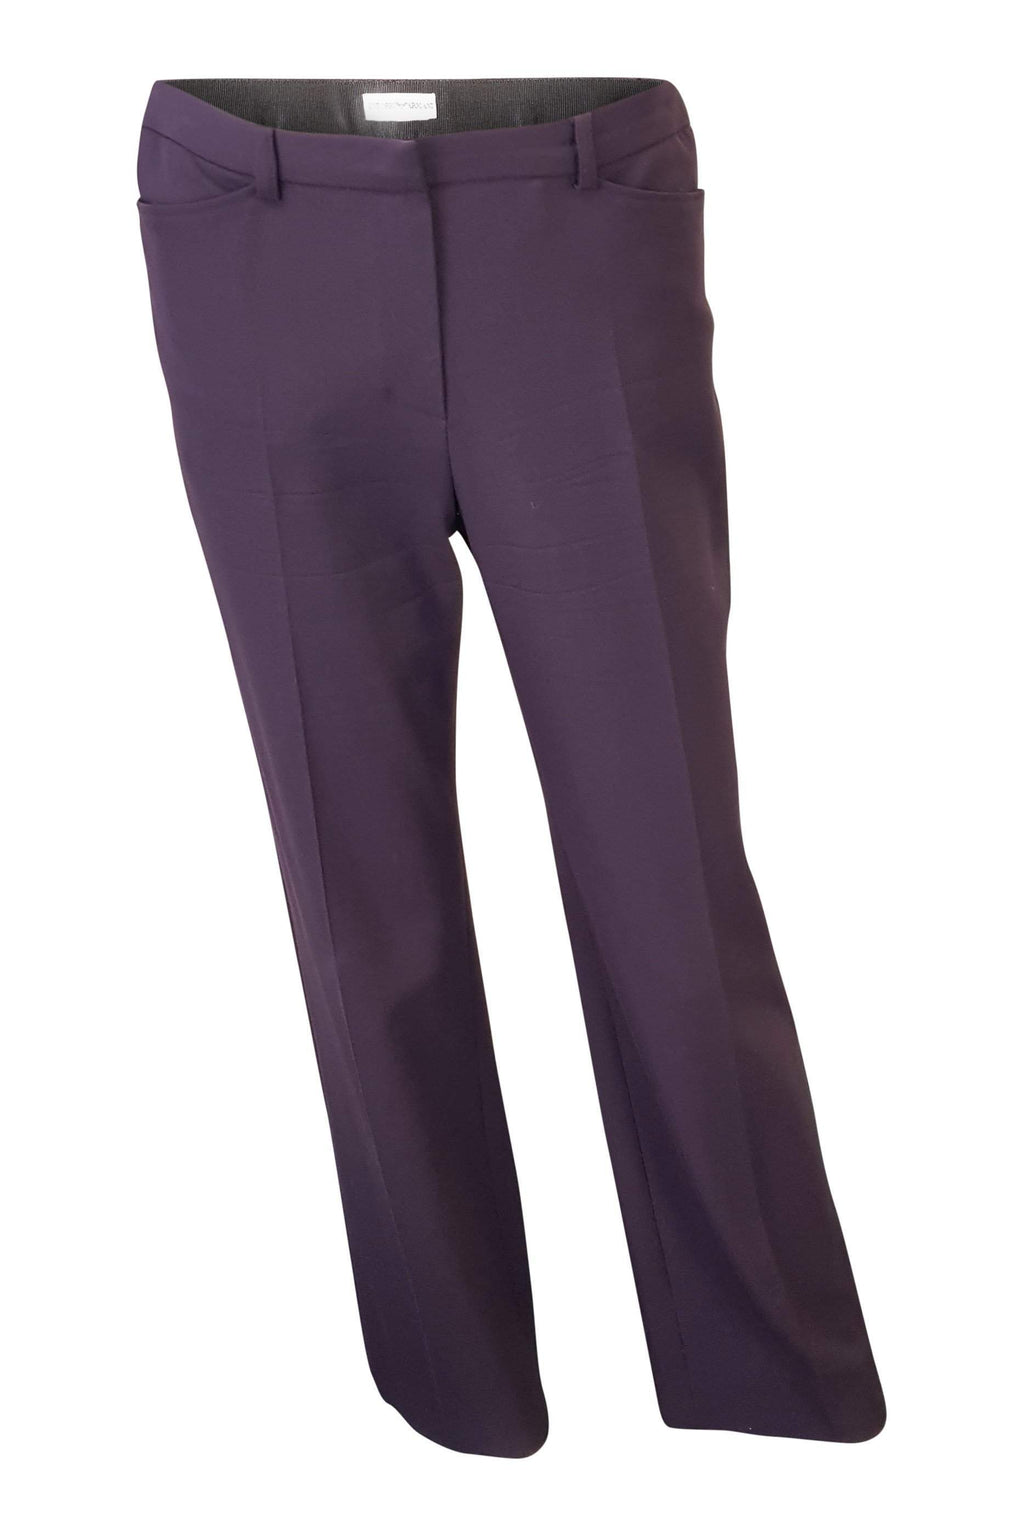 Bluza z wełny w spodnie szary spodnie Armani wełniany spodnie Armani | Grey  pants, Trousers women, Wool trousers